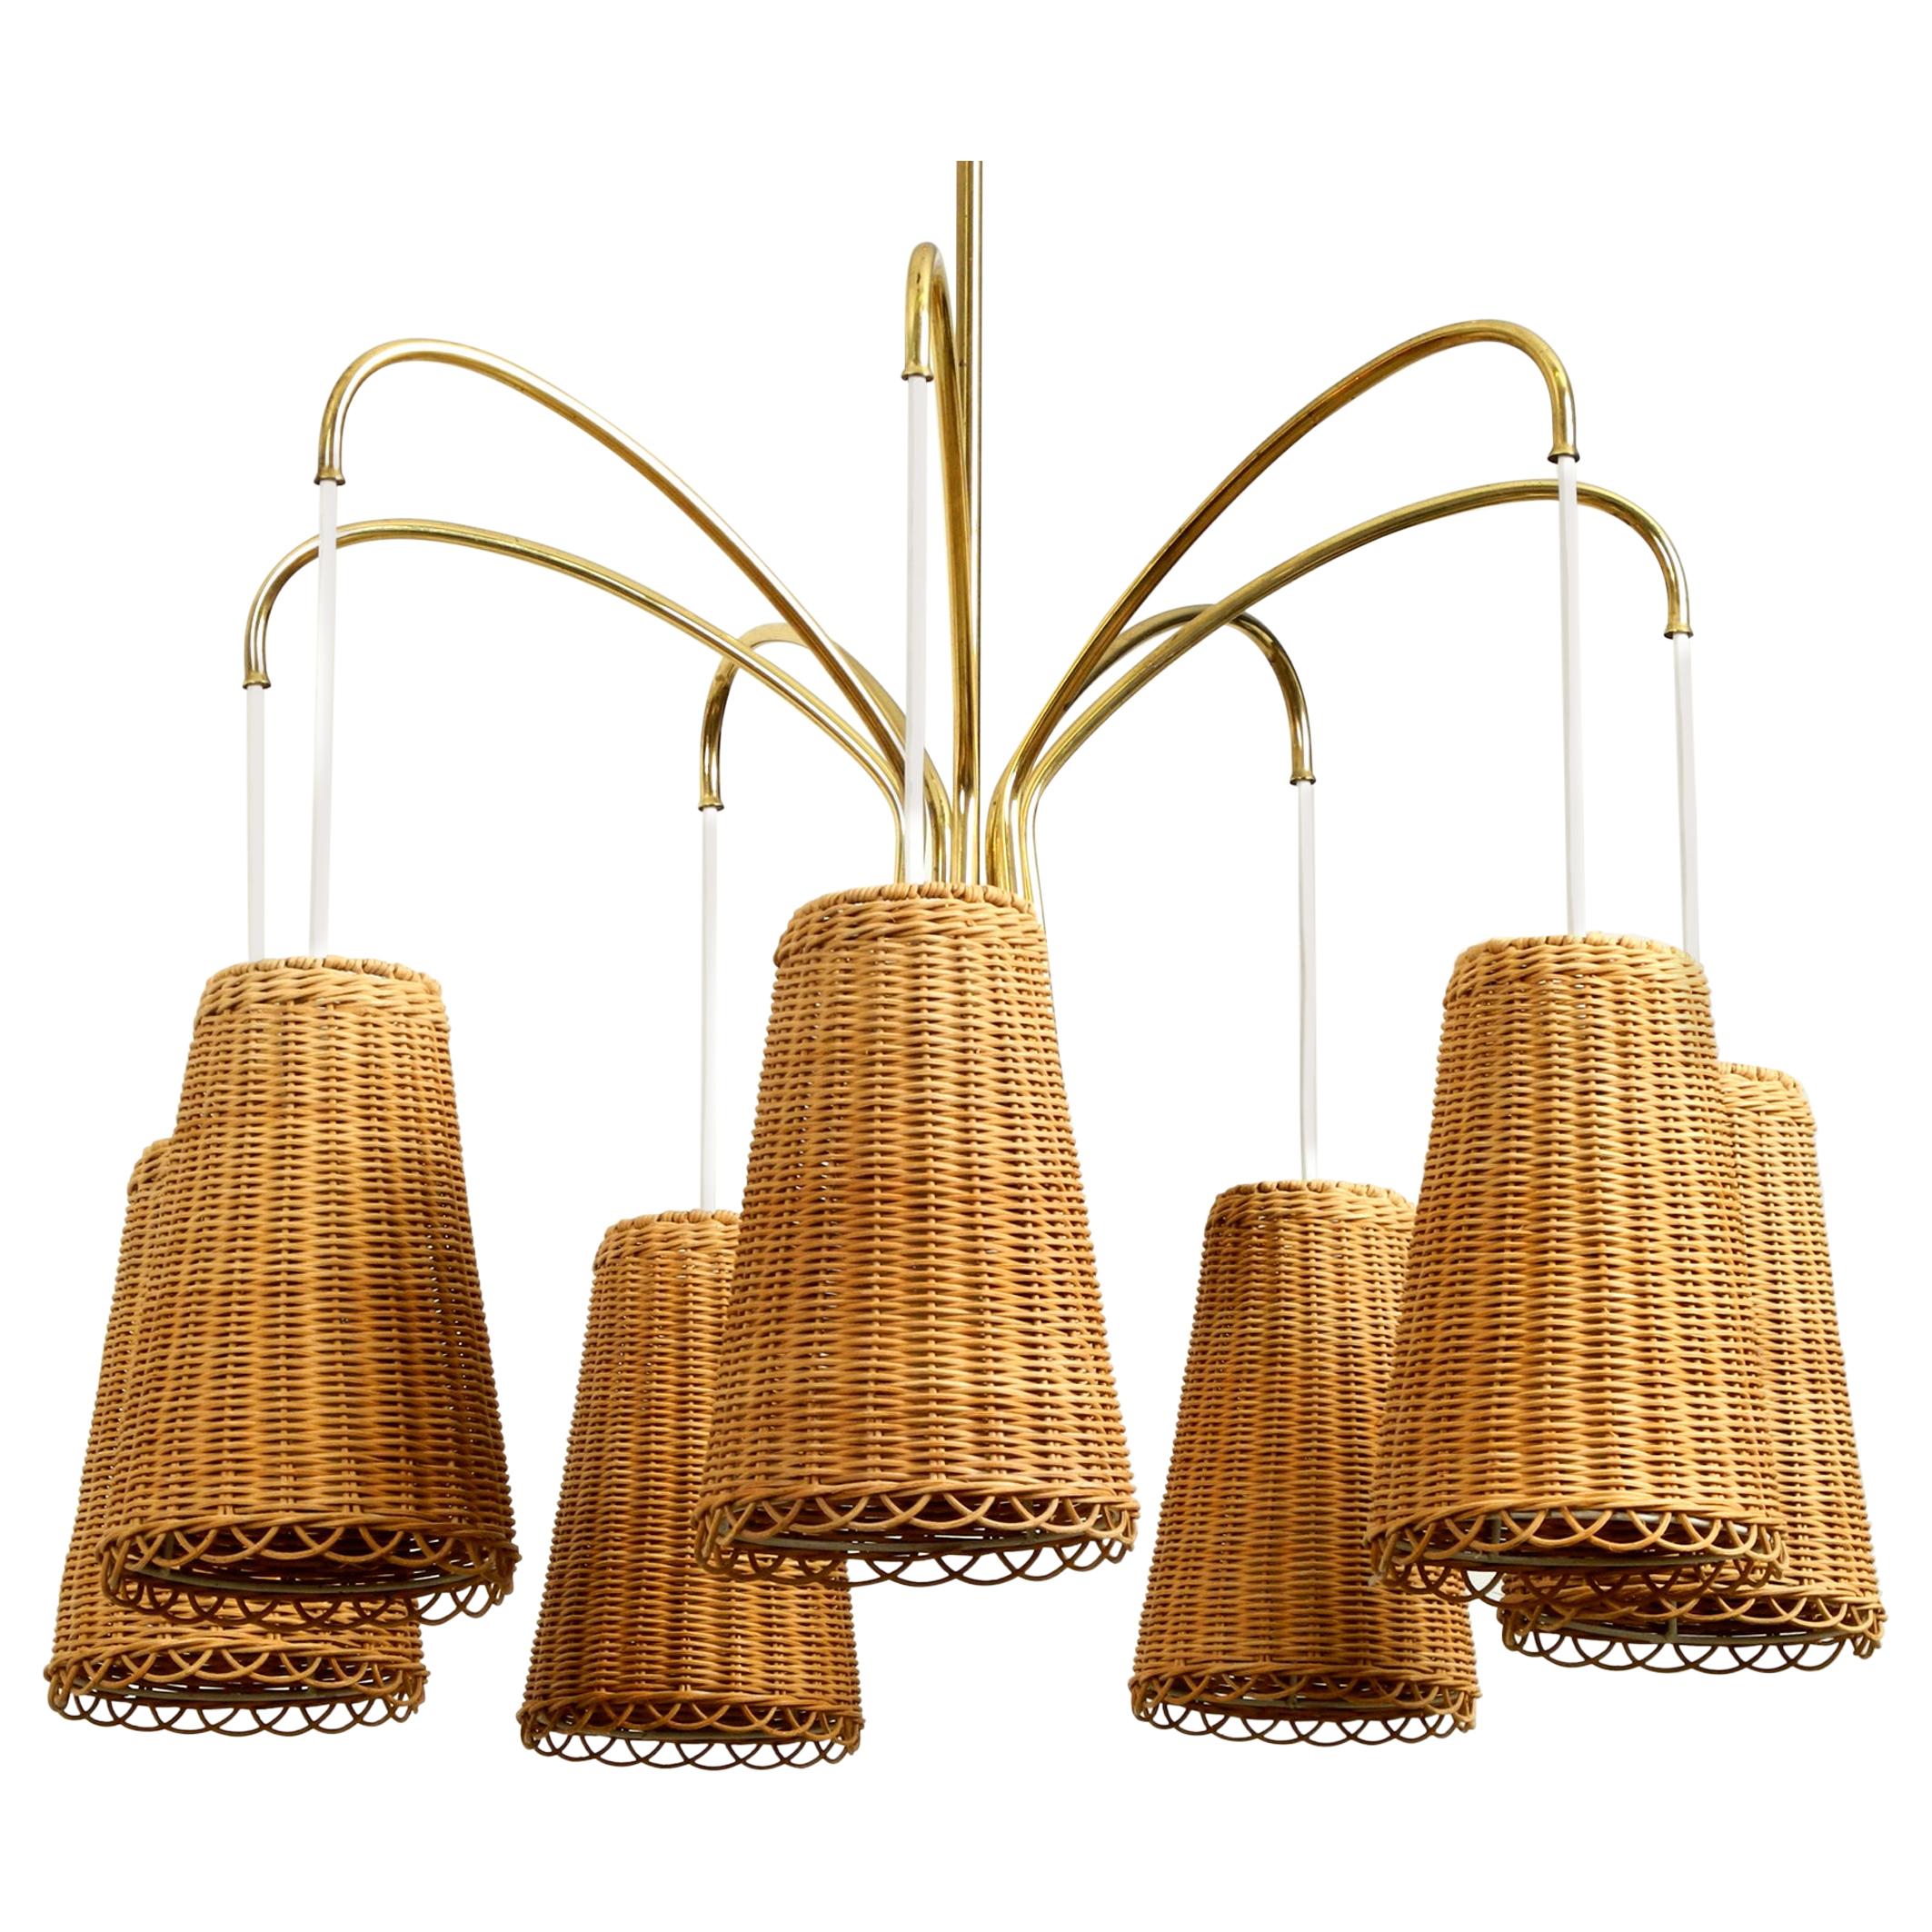 Midcentury Brass Ceiling Lamp with 7 Basket Shades, Vereinigte Werkstätten